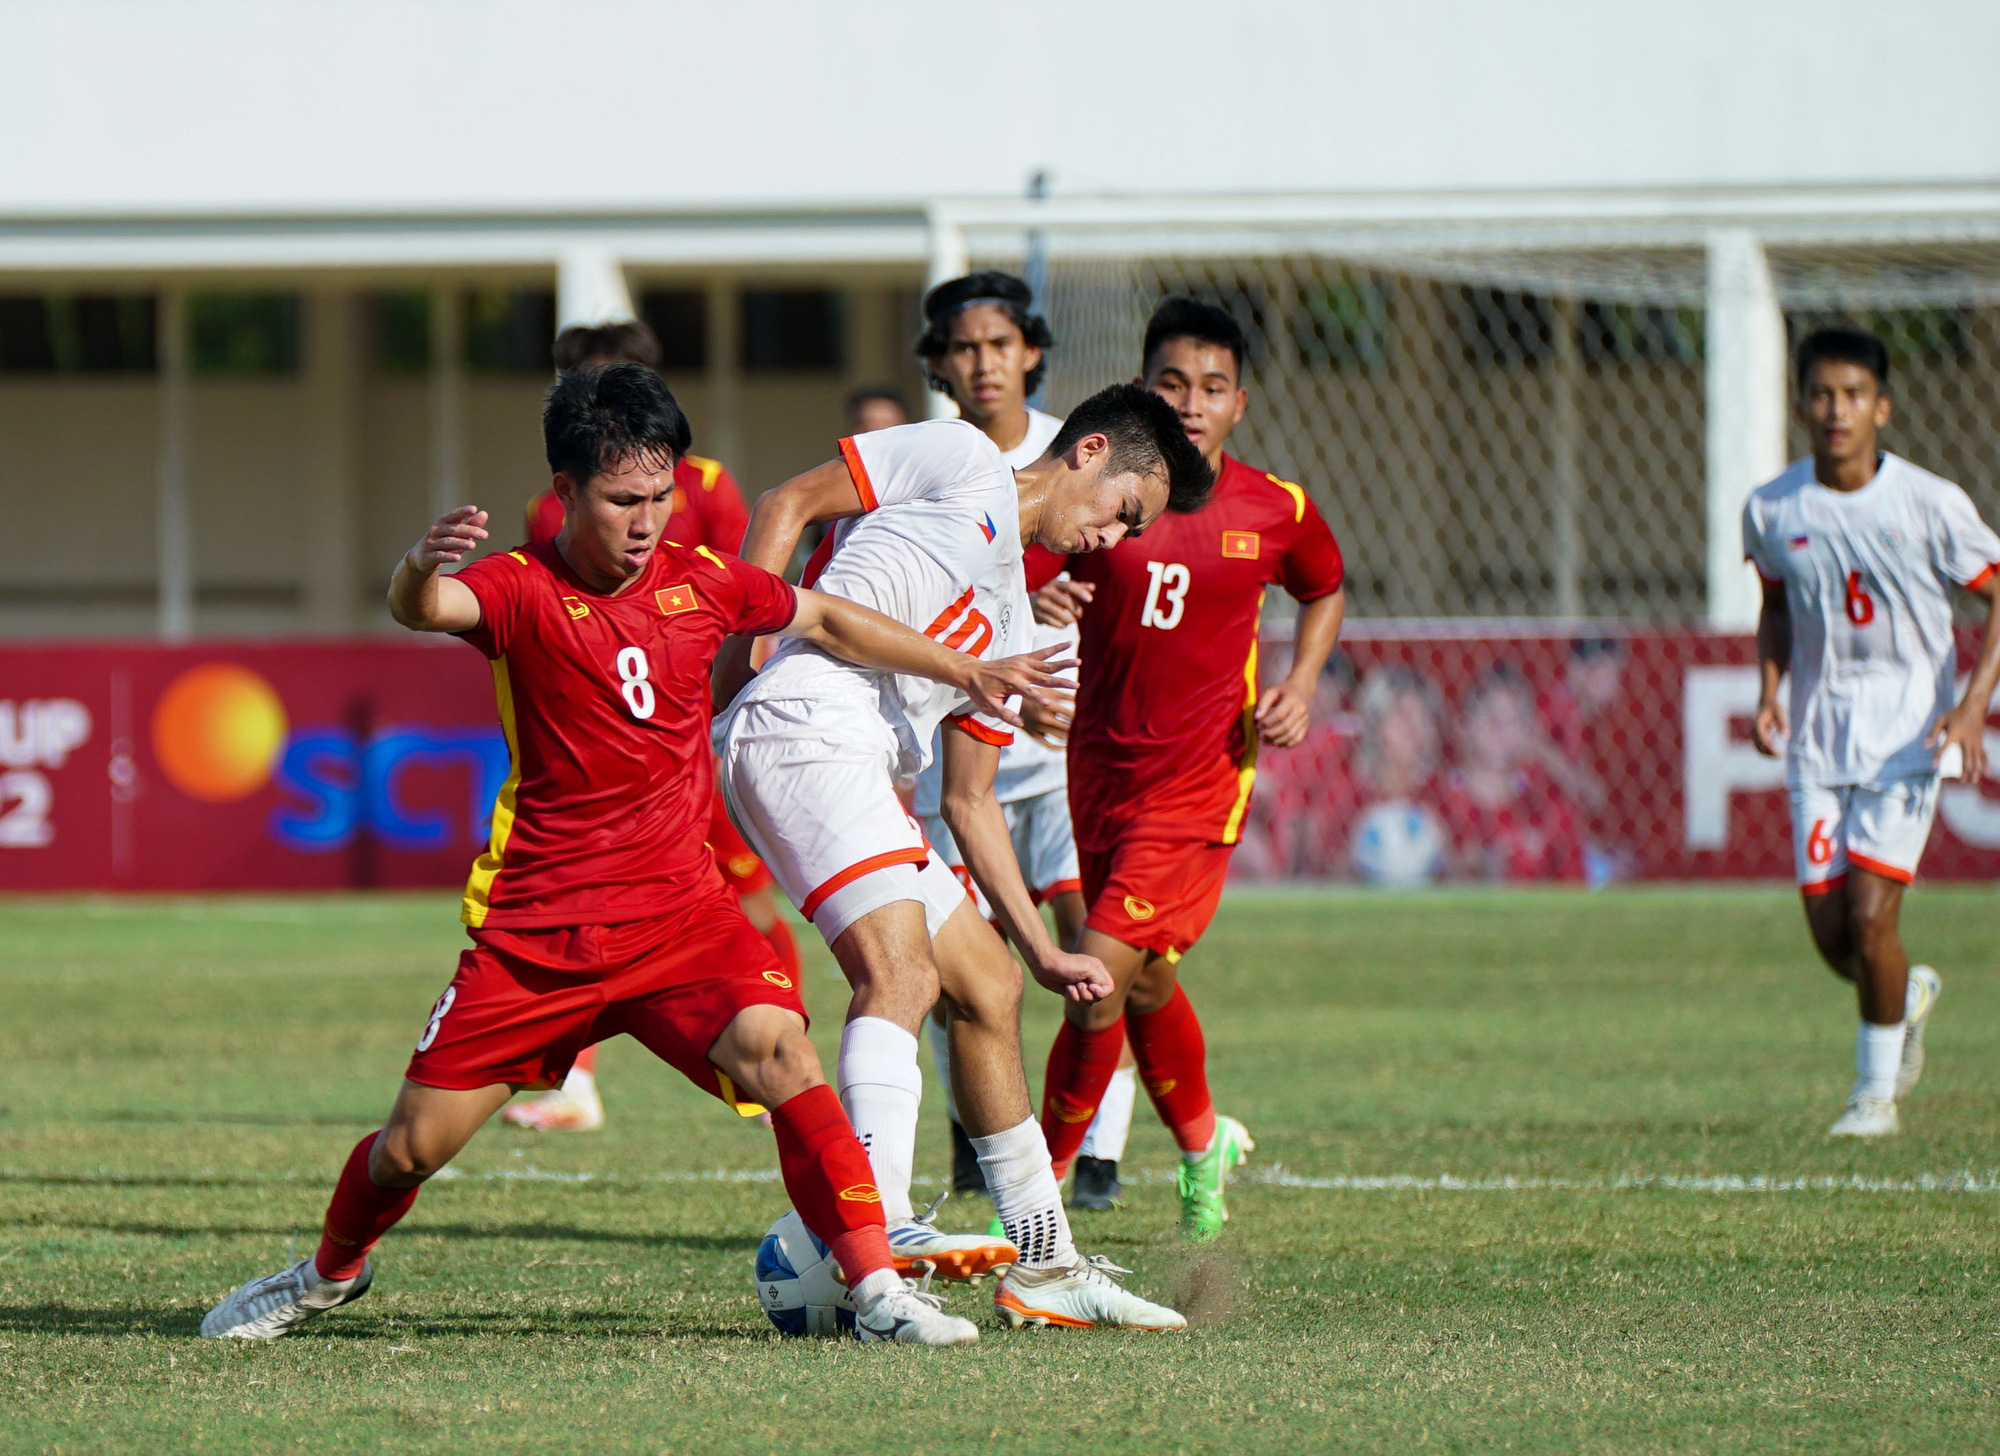 ĐT U19 Việt Nam 4-1 ĐT U19 Philippines: Chiến thắng thuyết phục